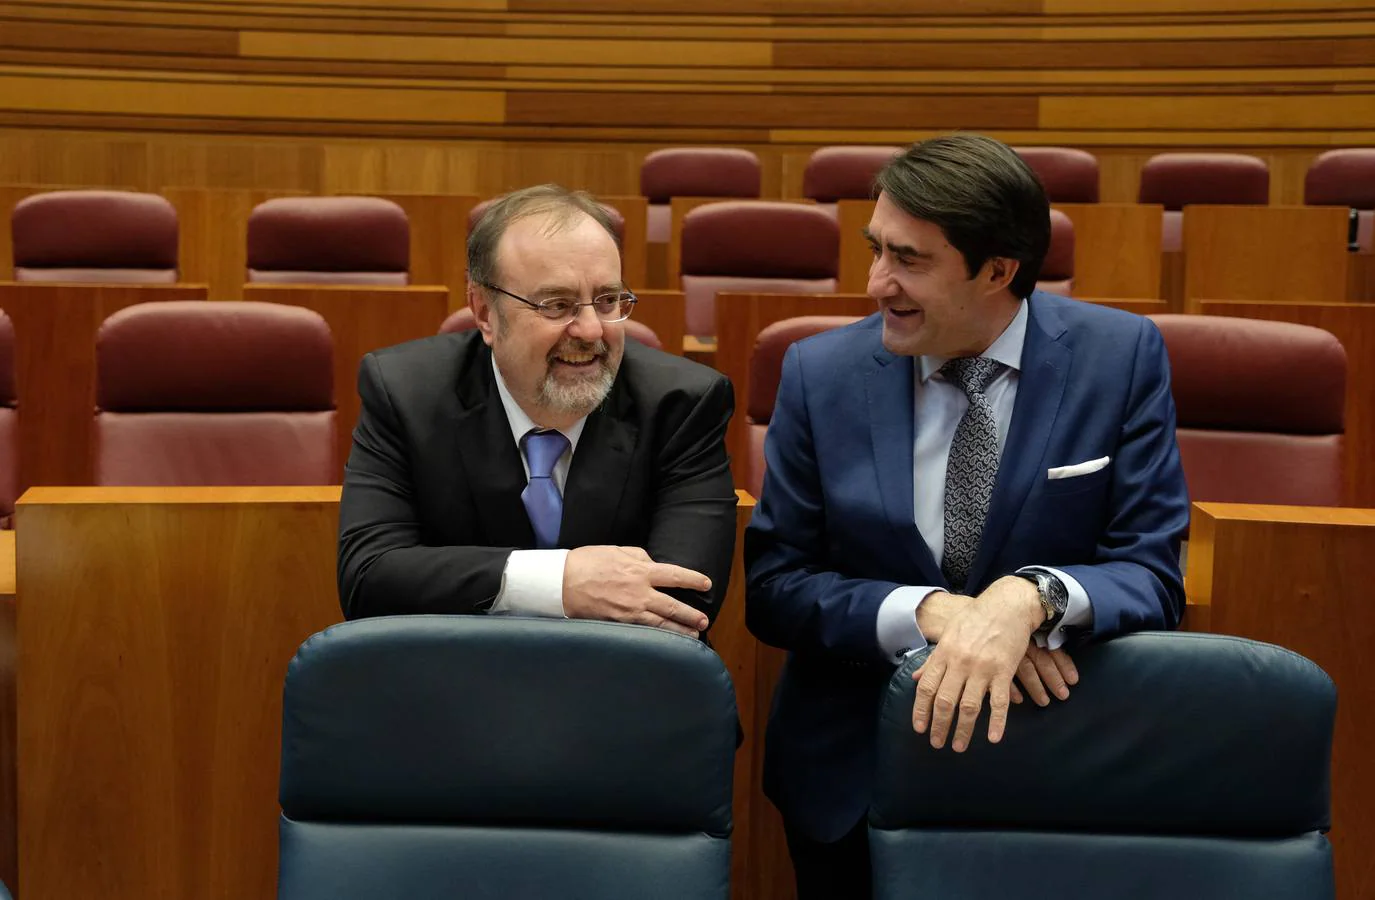 El presidente de la Junta de Castilla y León, Juan Vicente Herrera, ha tendido la mano una vez más para cerrar acuerdos de comunidad en torno a la ordenación del territorio y la reforma del Estatuto de Autonomía